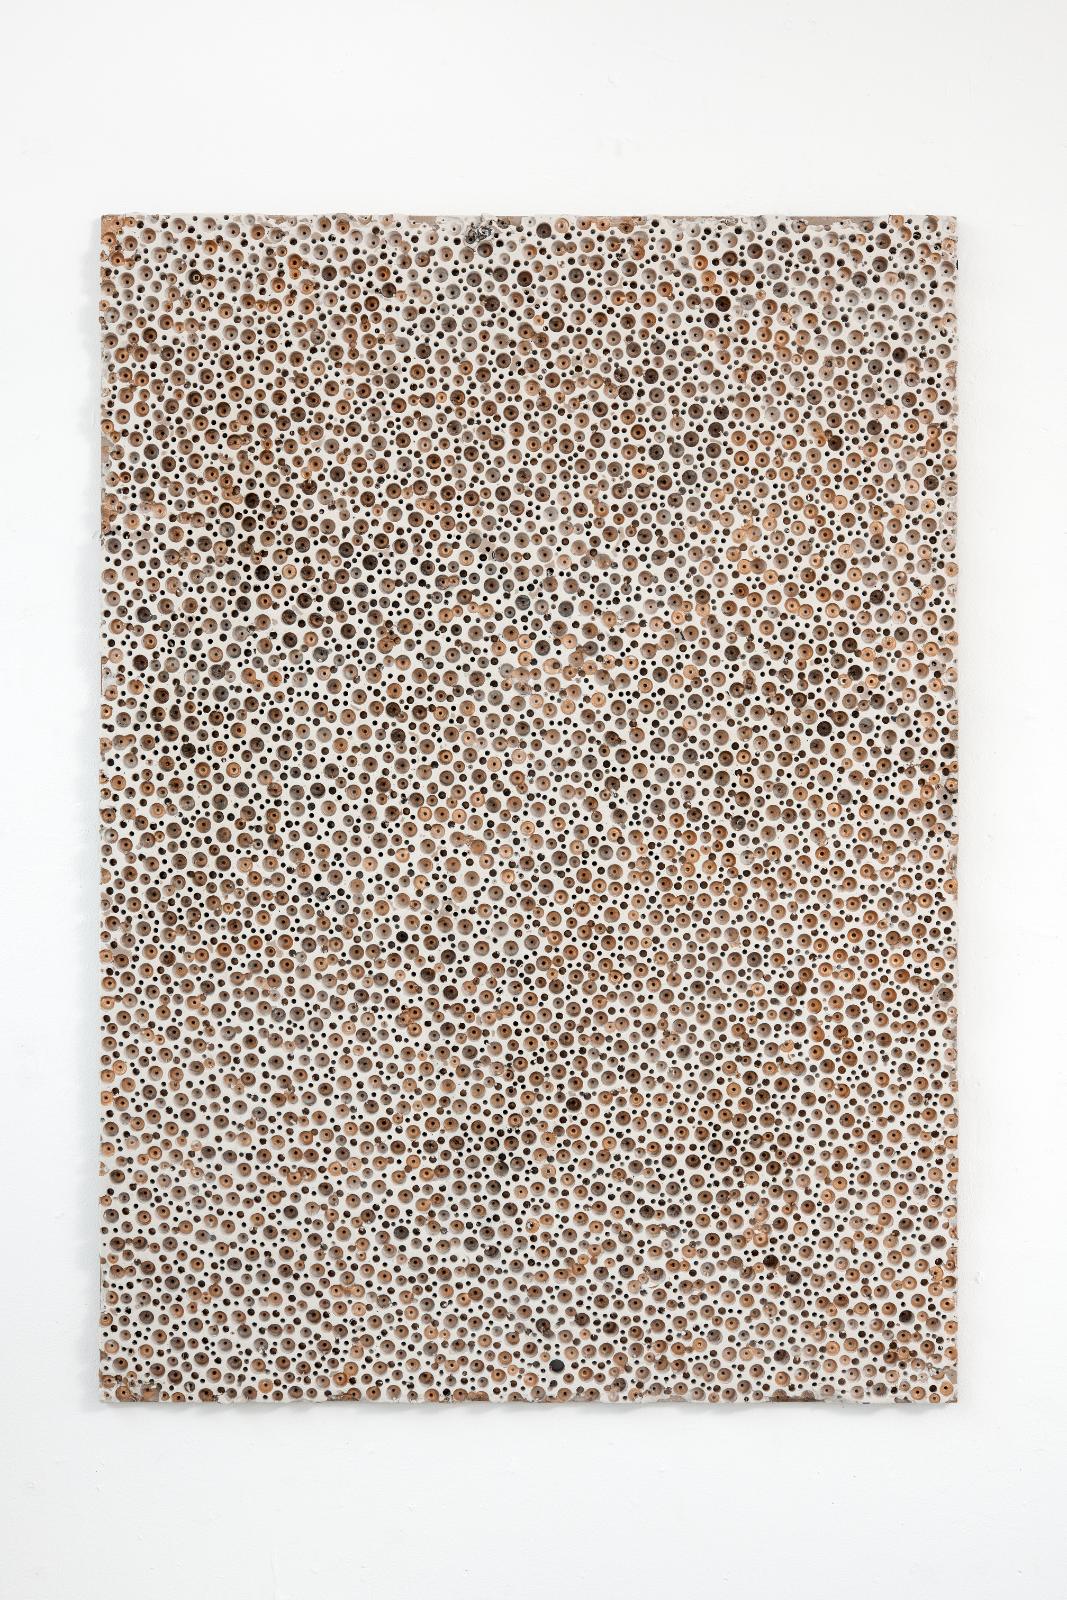 Martin Bruno Schmid Bohrstück #1 2015 Acryl, Gipskarton, Bohrung 125 × 90 cm Preis auf Anfrage